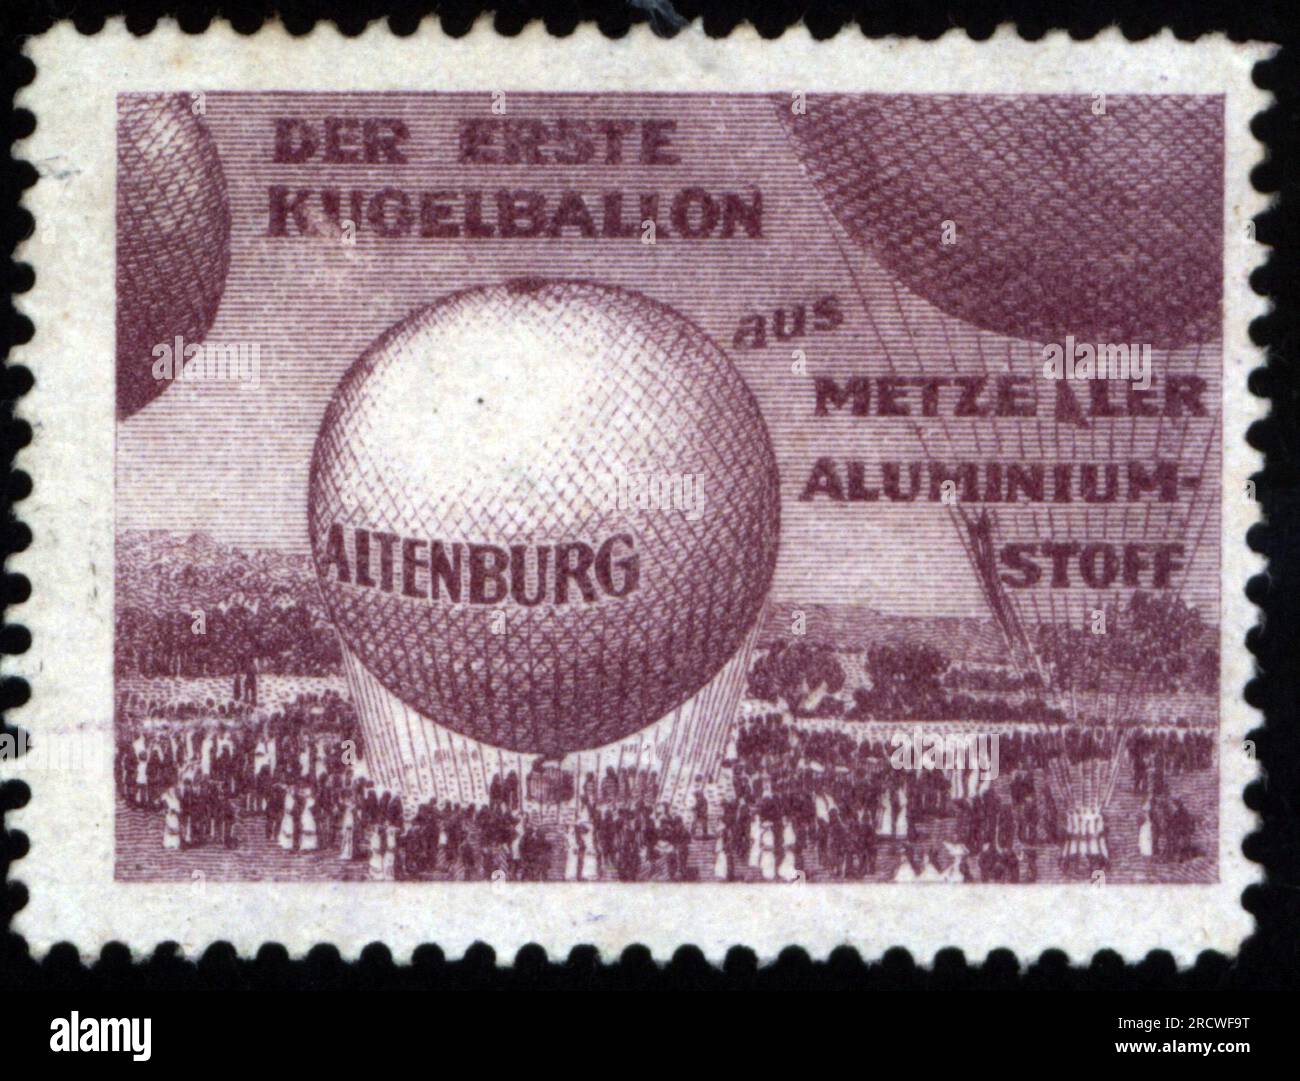 Publicité, transport / transport, le premier ballon orbe fait de tissu d'aluminium Metzeler, DROITS-SUPPLÉMENTAIRES-AUTORISATION-INFO-NON-DISPONIBLE Banque D'Images